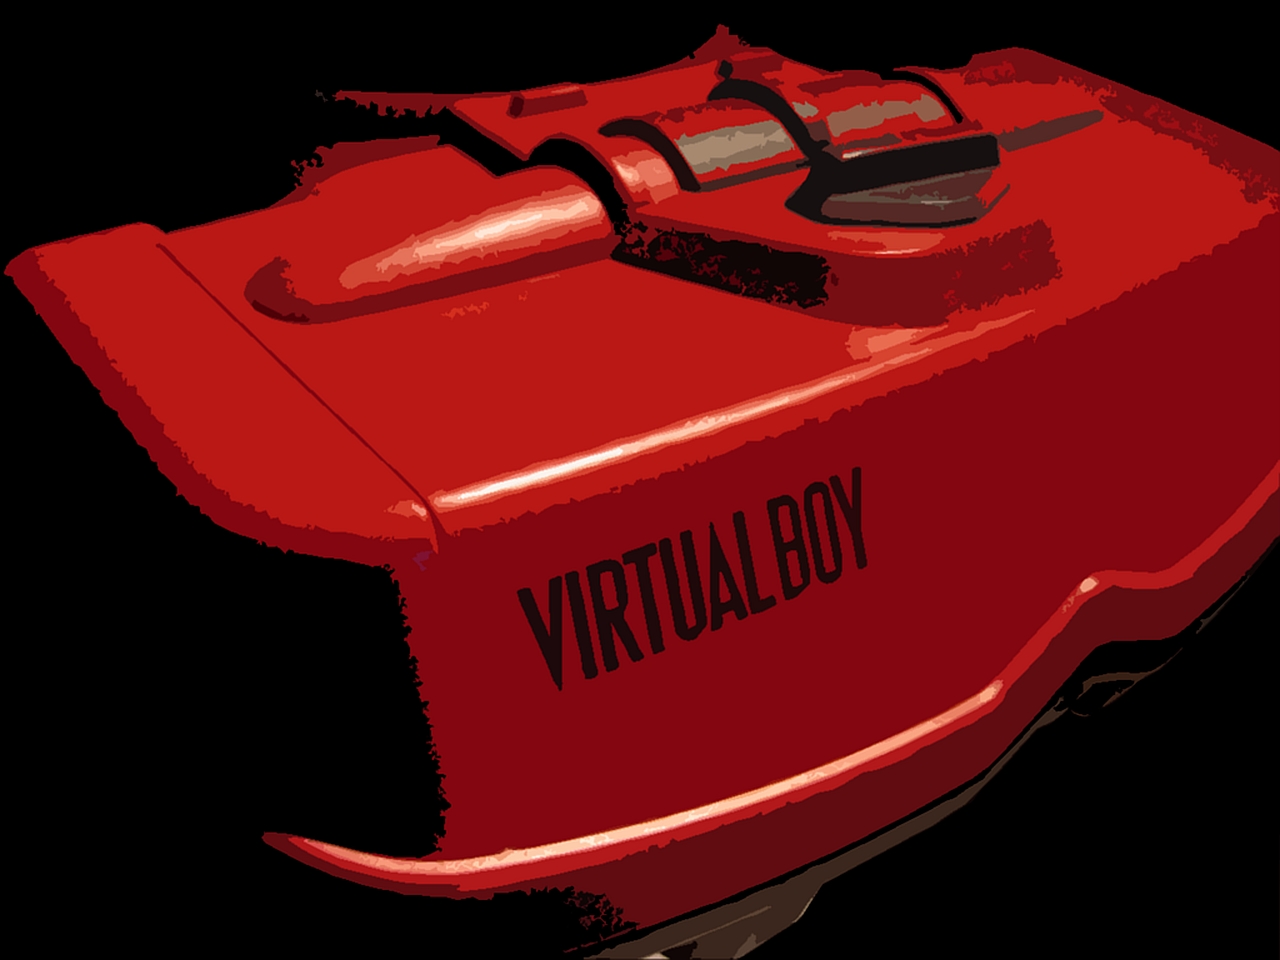 Virtual Boy wallpaper, Video Game, HQ Virtual Boy pictureK Wallpaper 2019